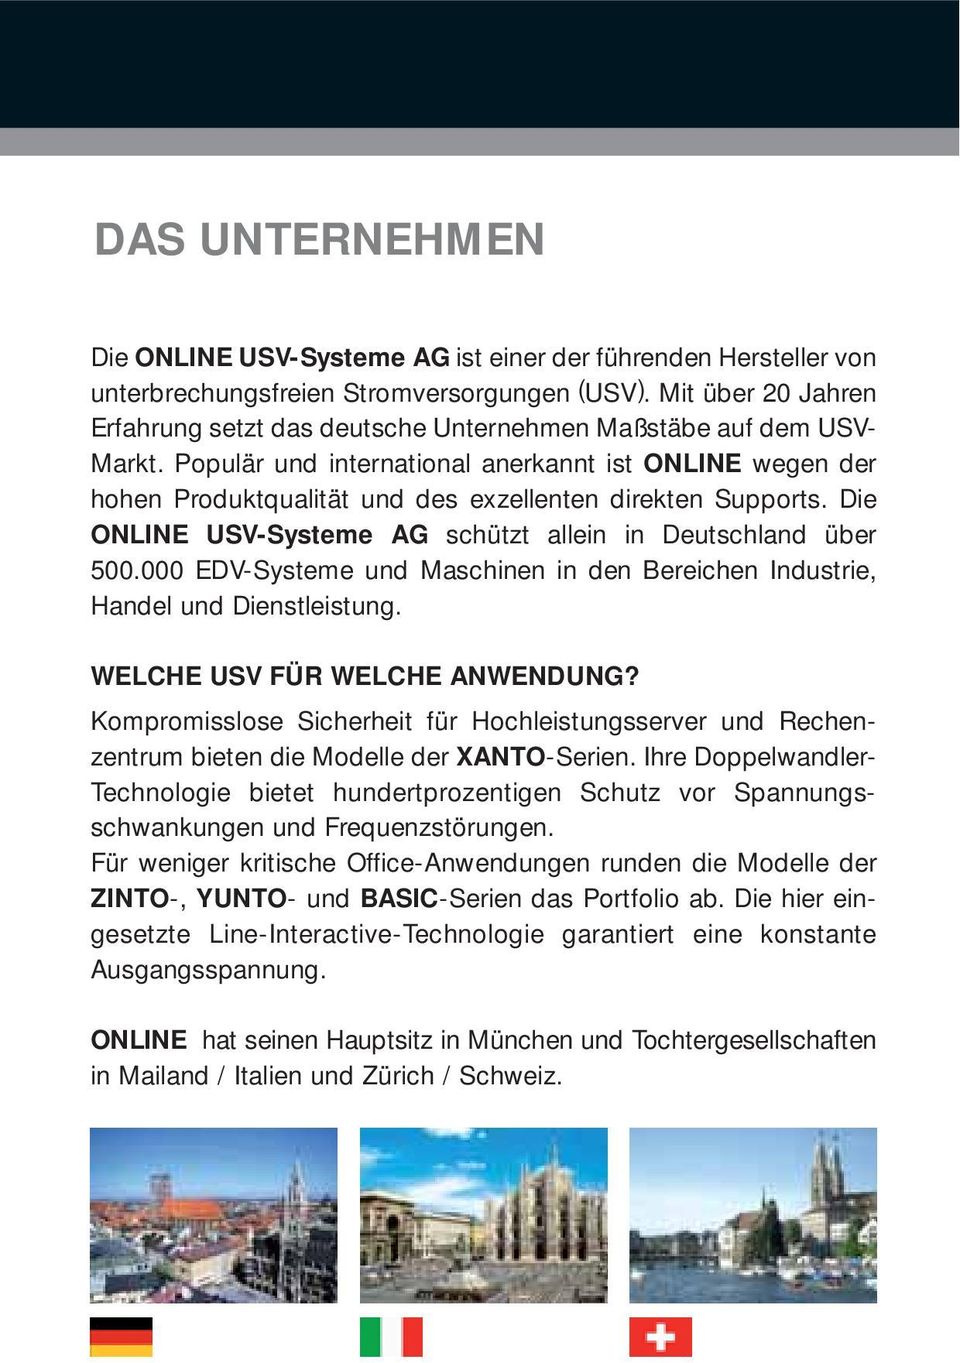 Populär und international anerkannt ist ONLINE wegen der hohen Produktqualität und des exzellenten direkten Supports. Die ONLINE USVSysteme AG schützt allein in Deutschland über 500.